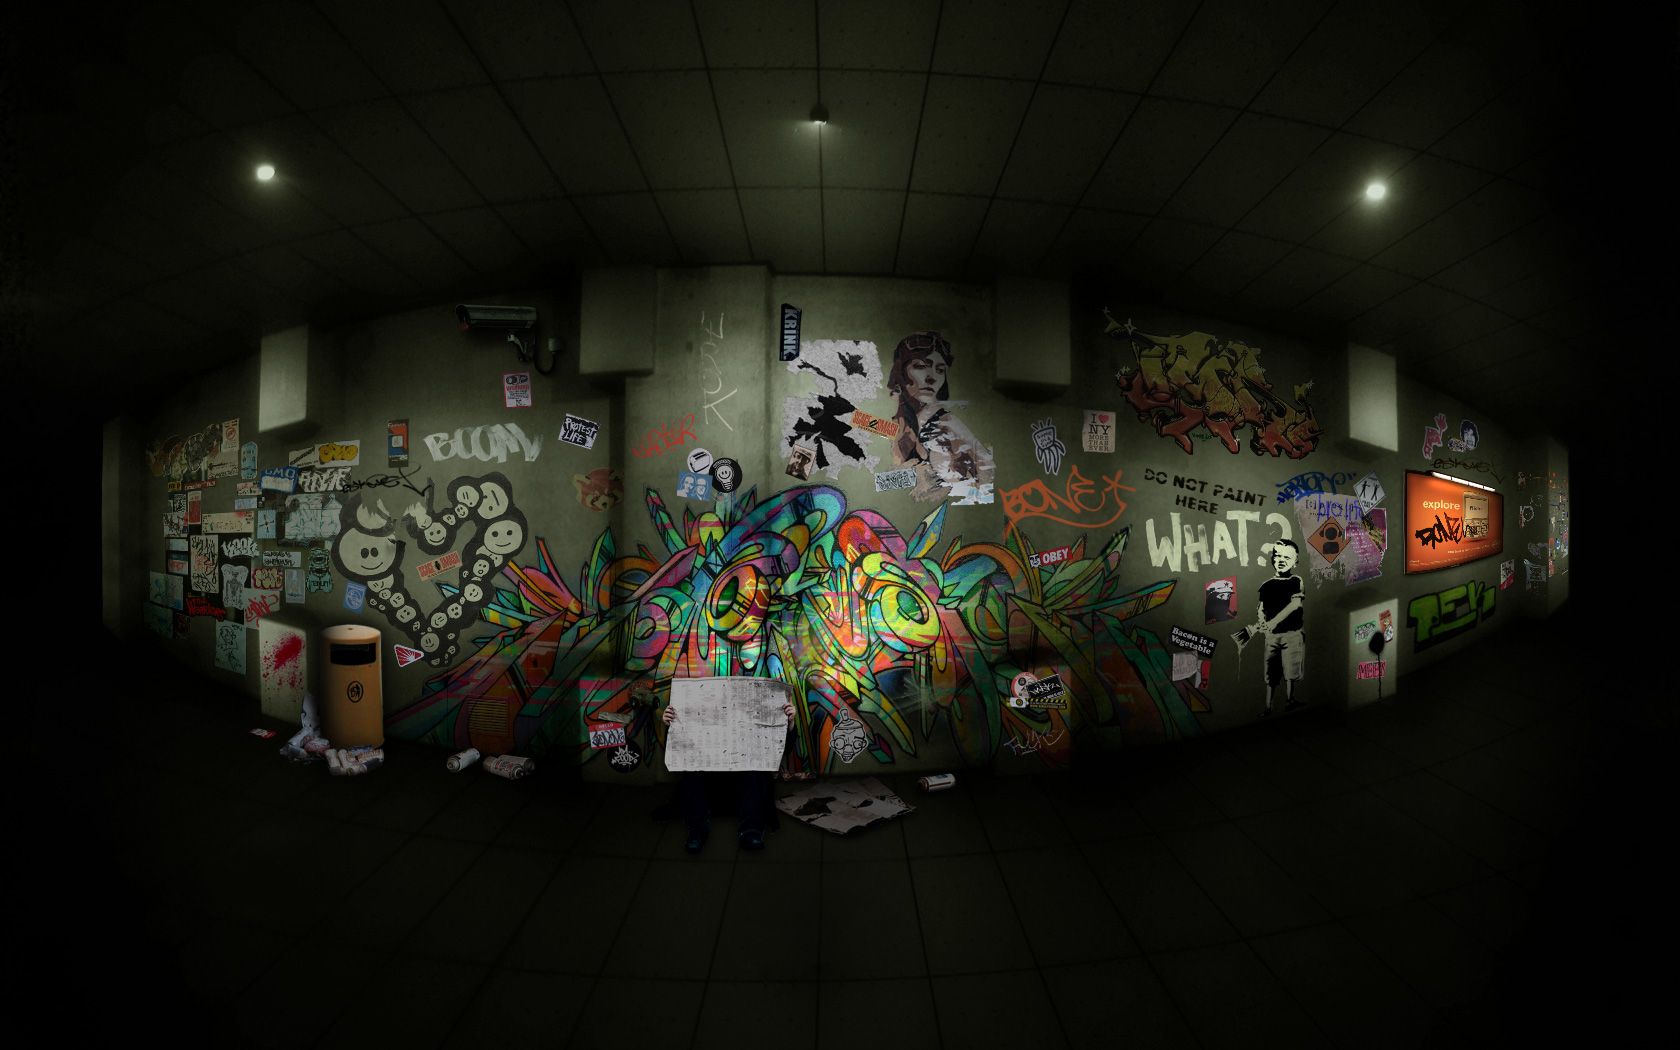 Graffiti Wallpaper HD